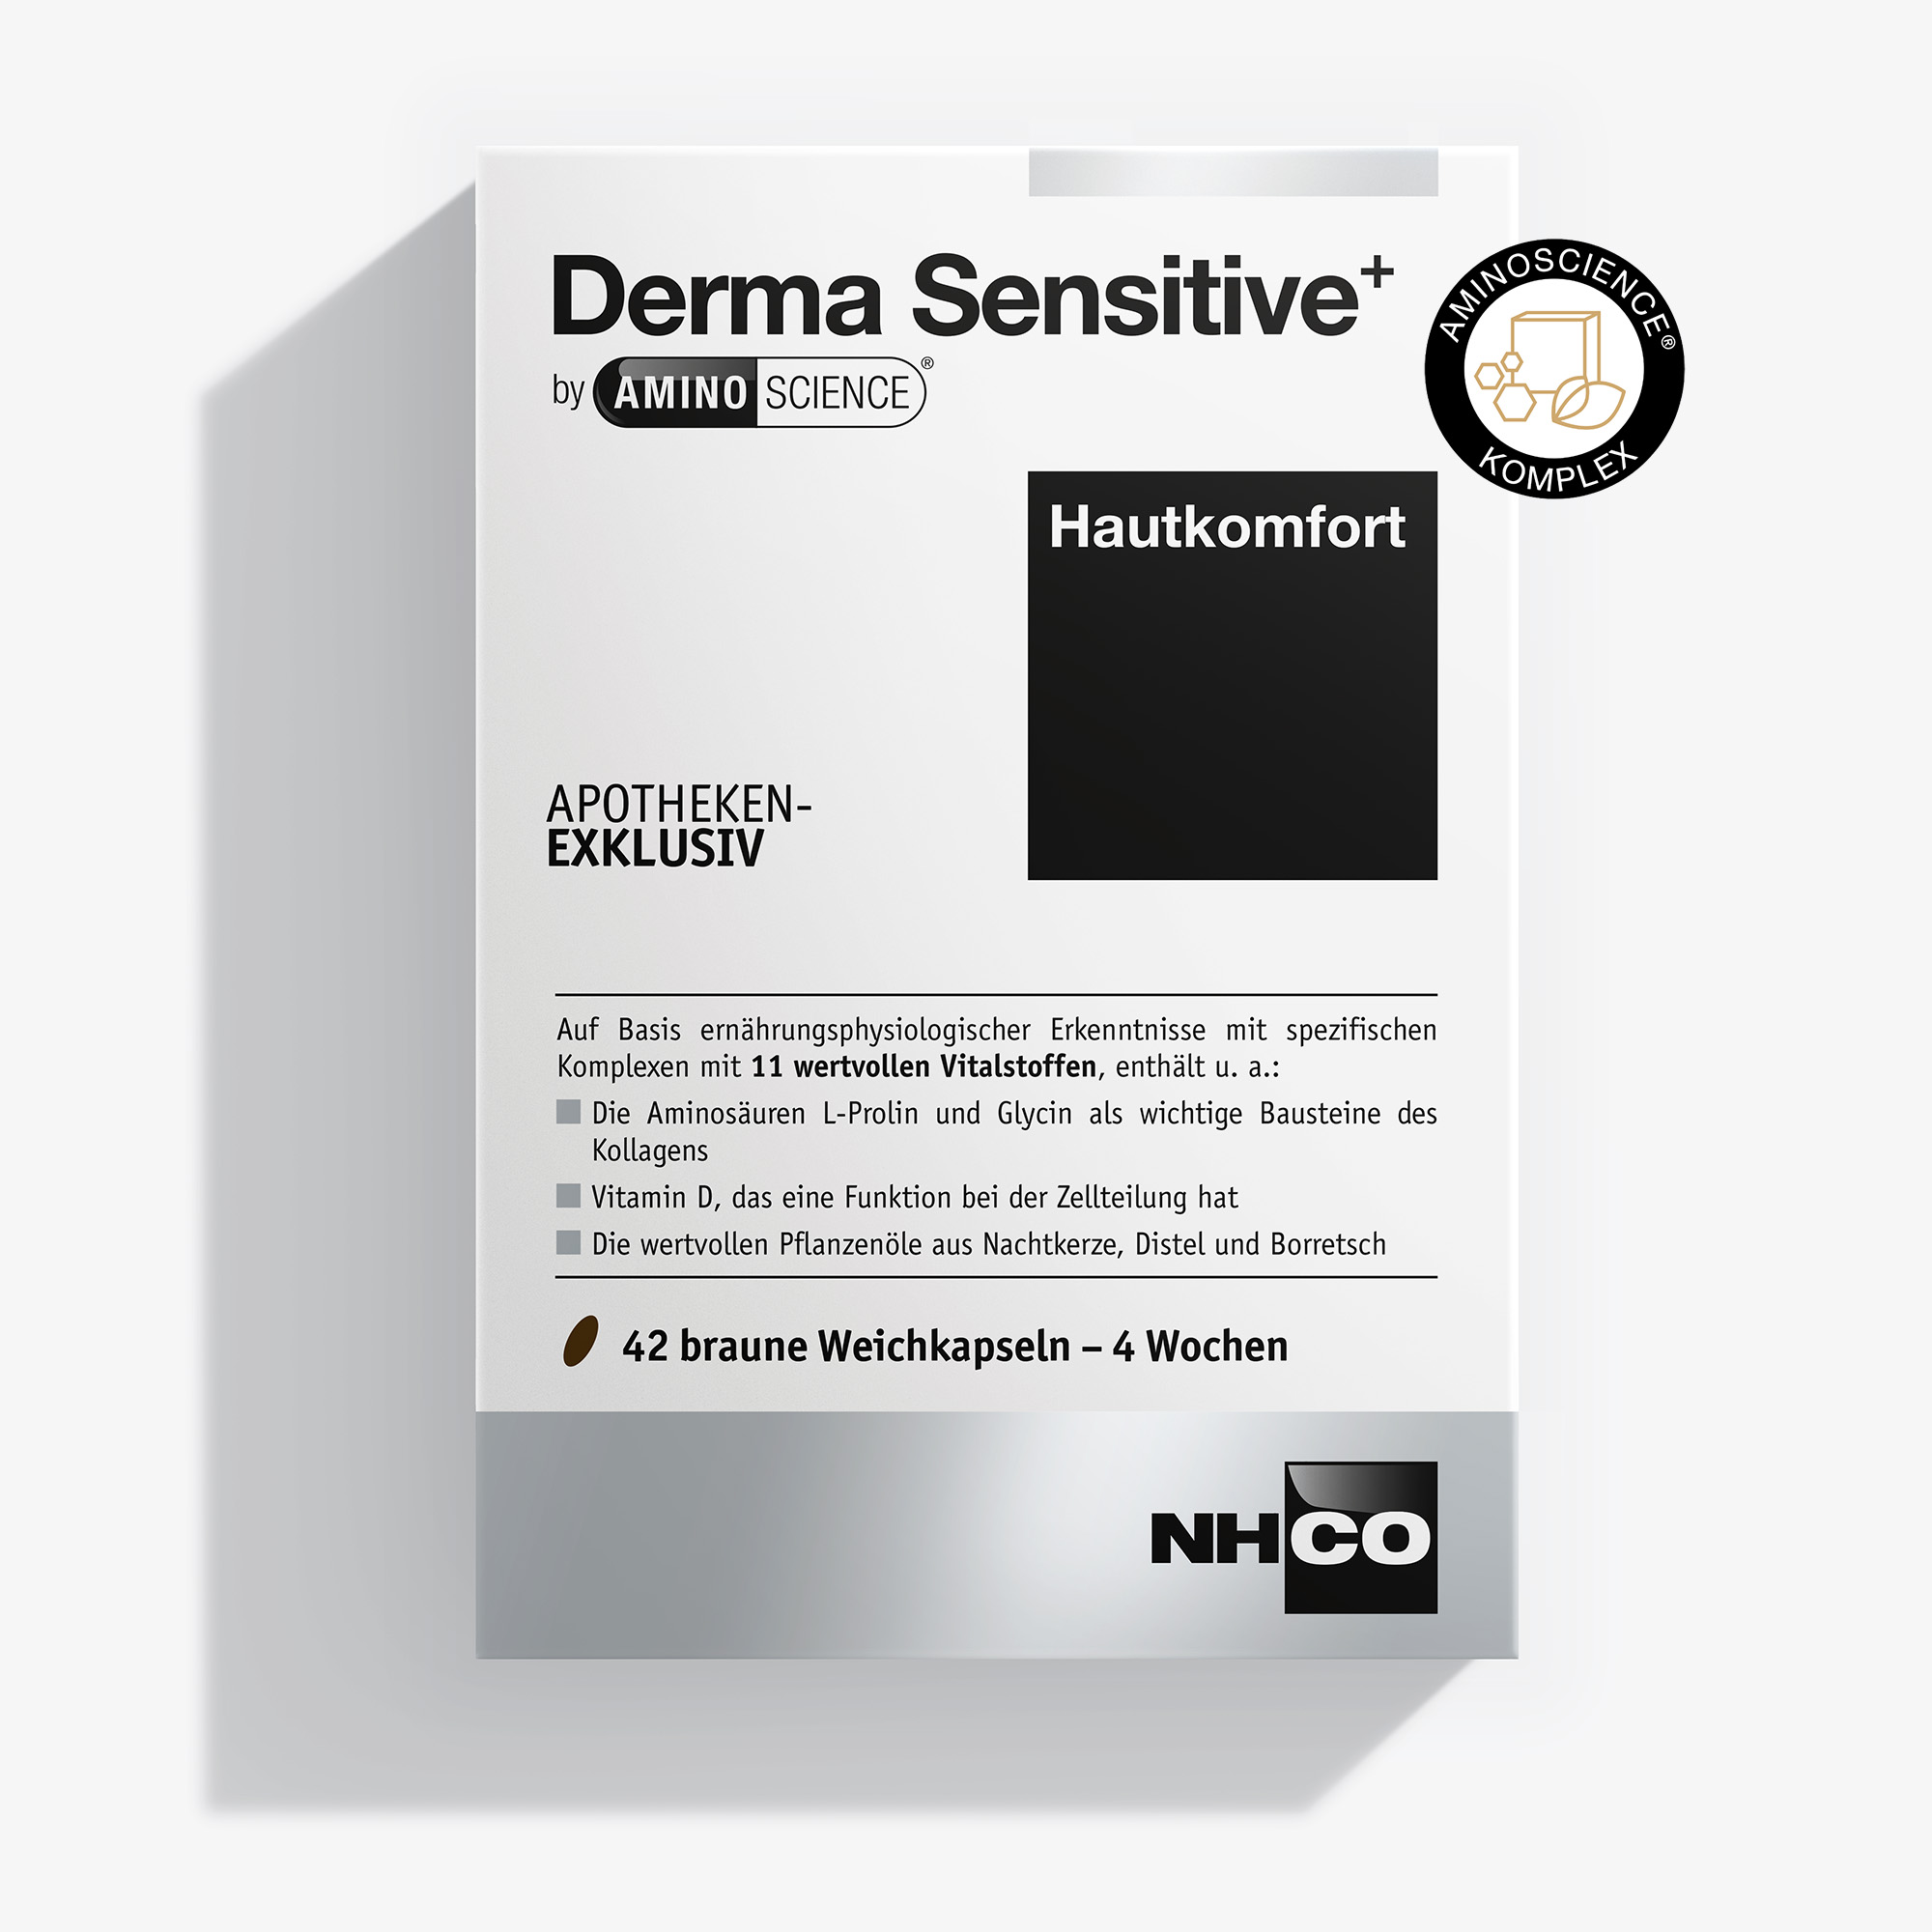 Derma Sensitive+ für den Hautkomfort